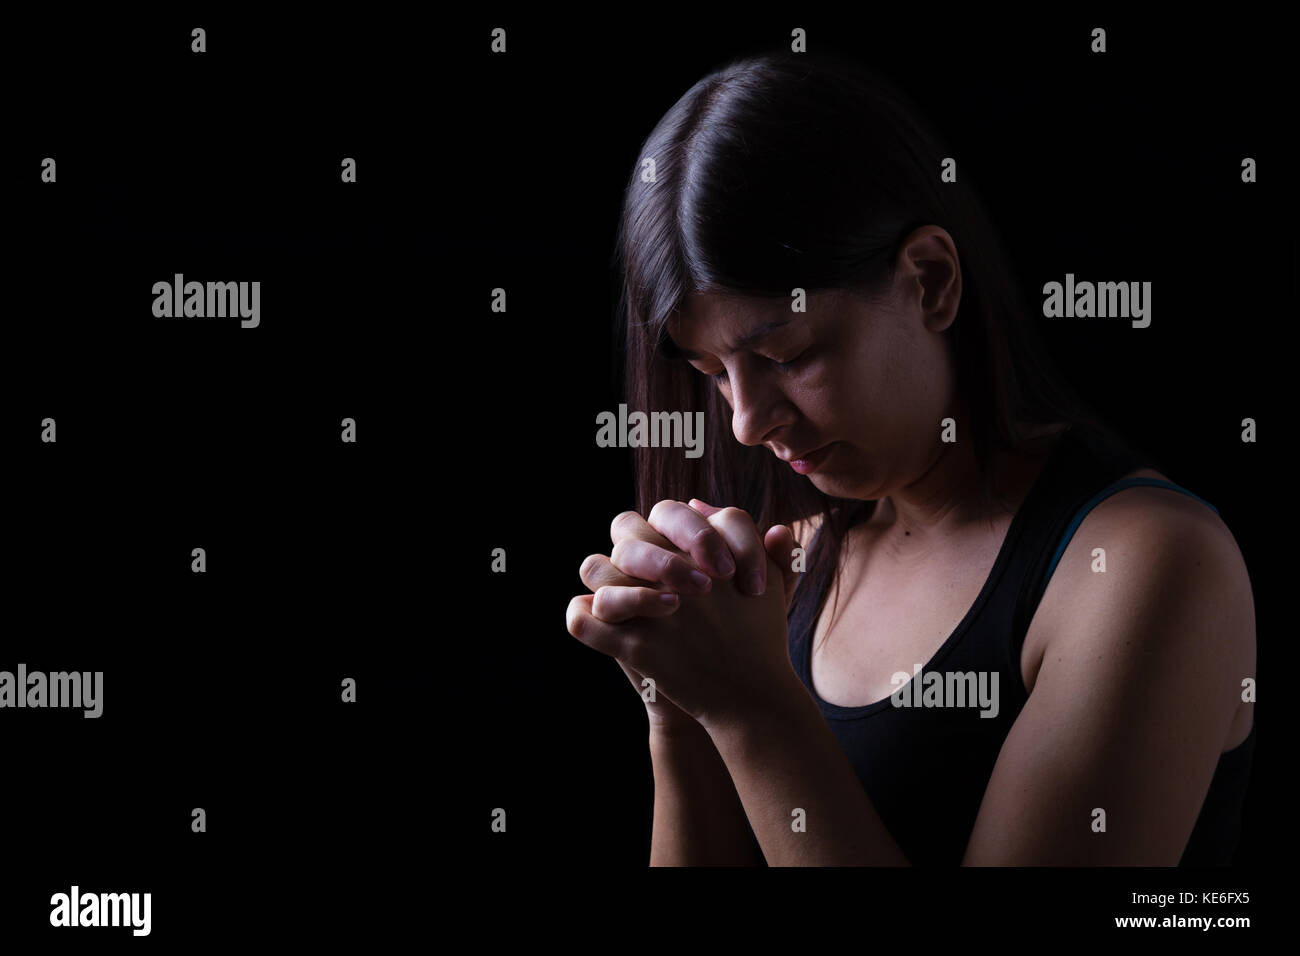 Treue Frau beten, Hände in der Anbetung zu Gott gefaltet, Kopf nach unten, die Augen geschlossen, in religiöser Inbrunst. schwarzer Hintergrund Gebet geschlossenen Augen die christliche Hoffnung Stockfoto